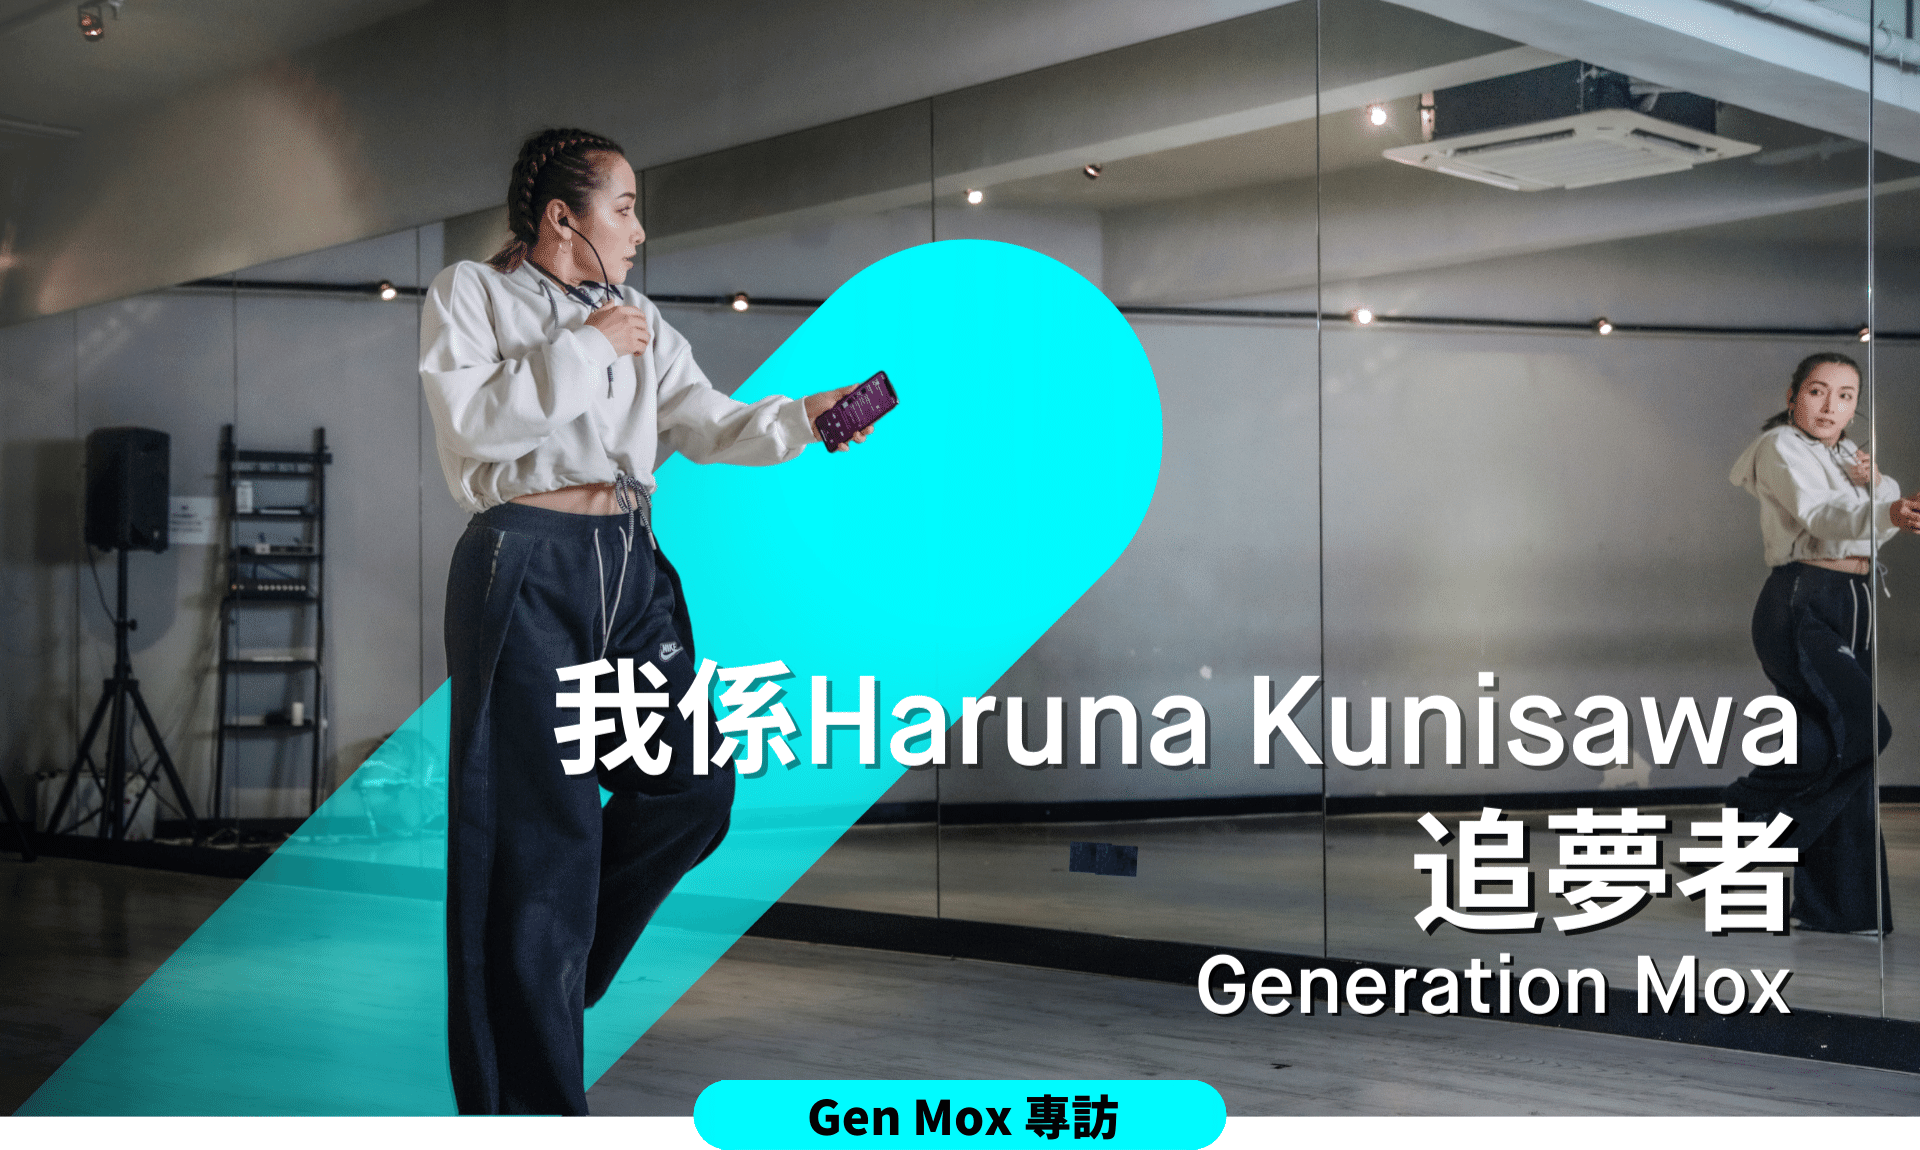 Generation Mox專訪Haruna Kunisawa —— 聞名於舞蹈界的專業排舞師和舞蹈員  